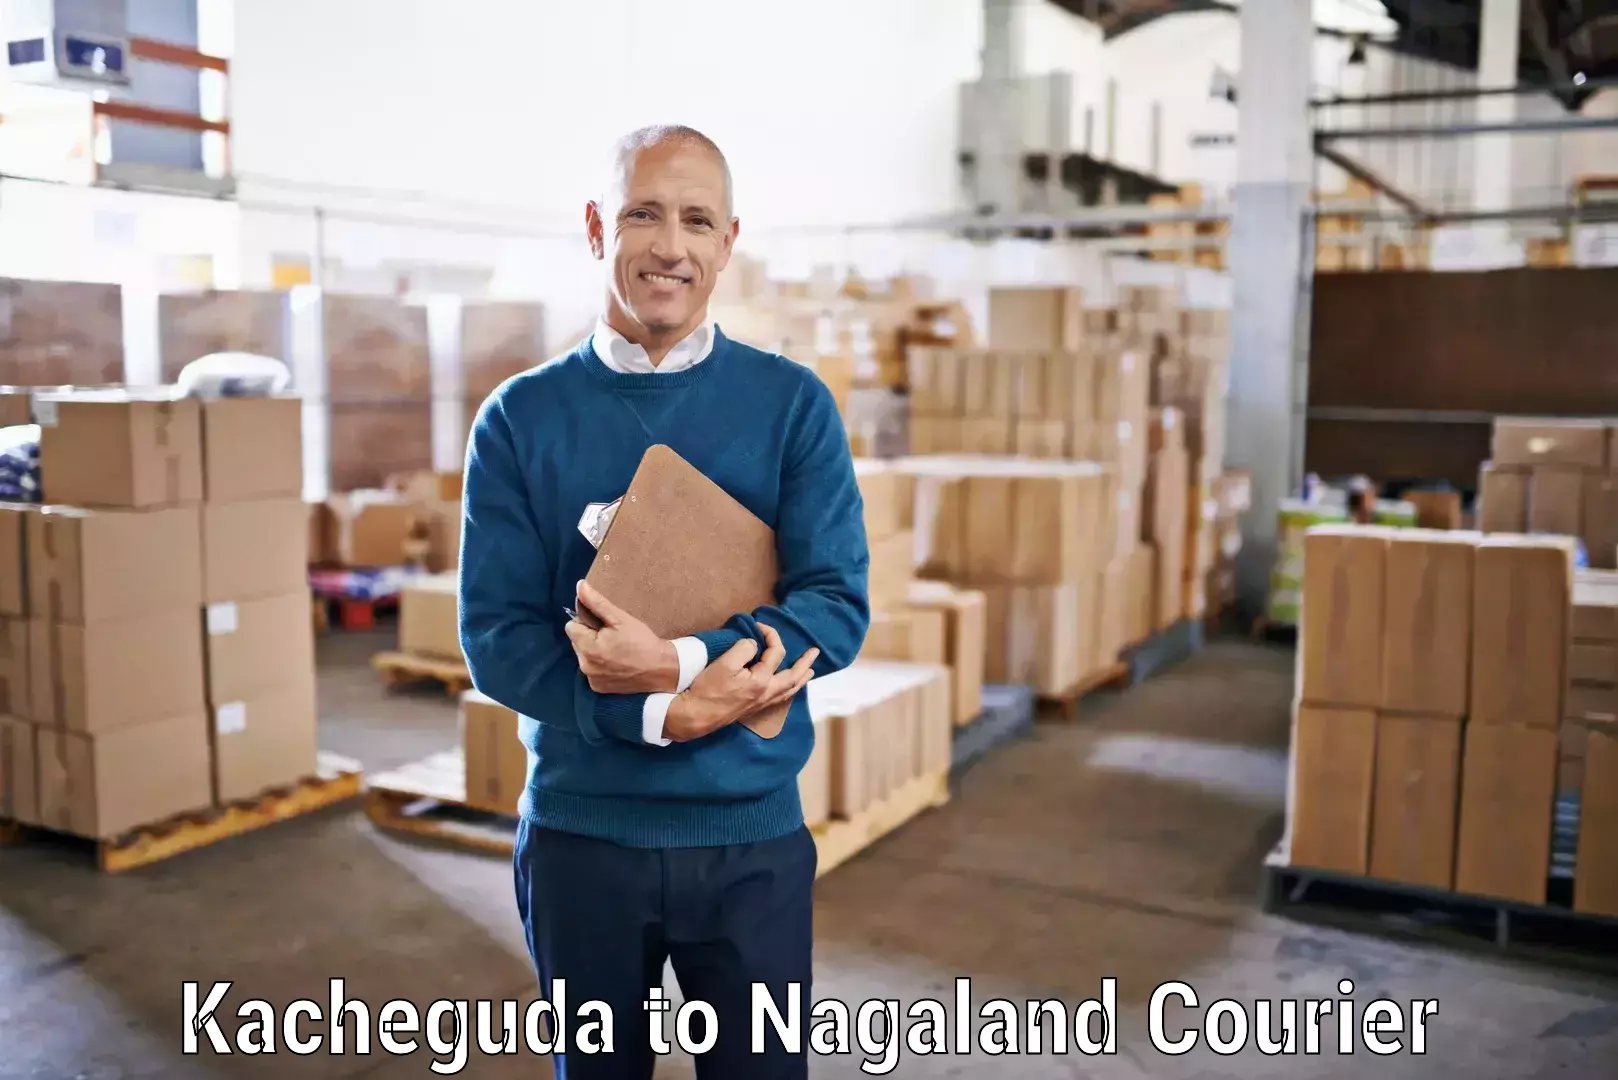 Global shipping networks Kacheguda to NIT Nagaland